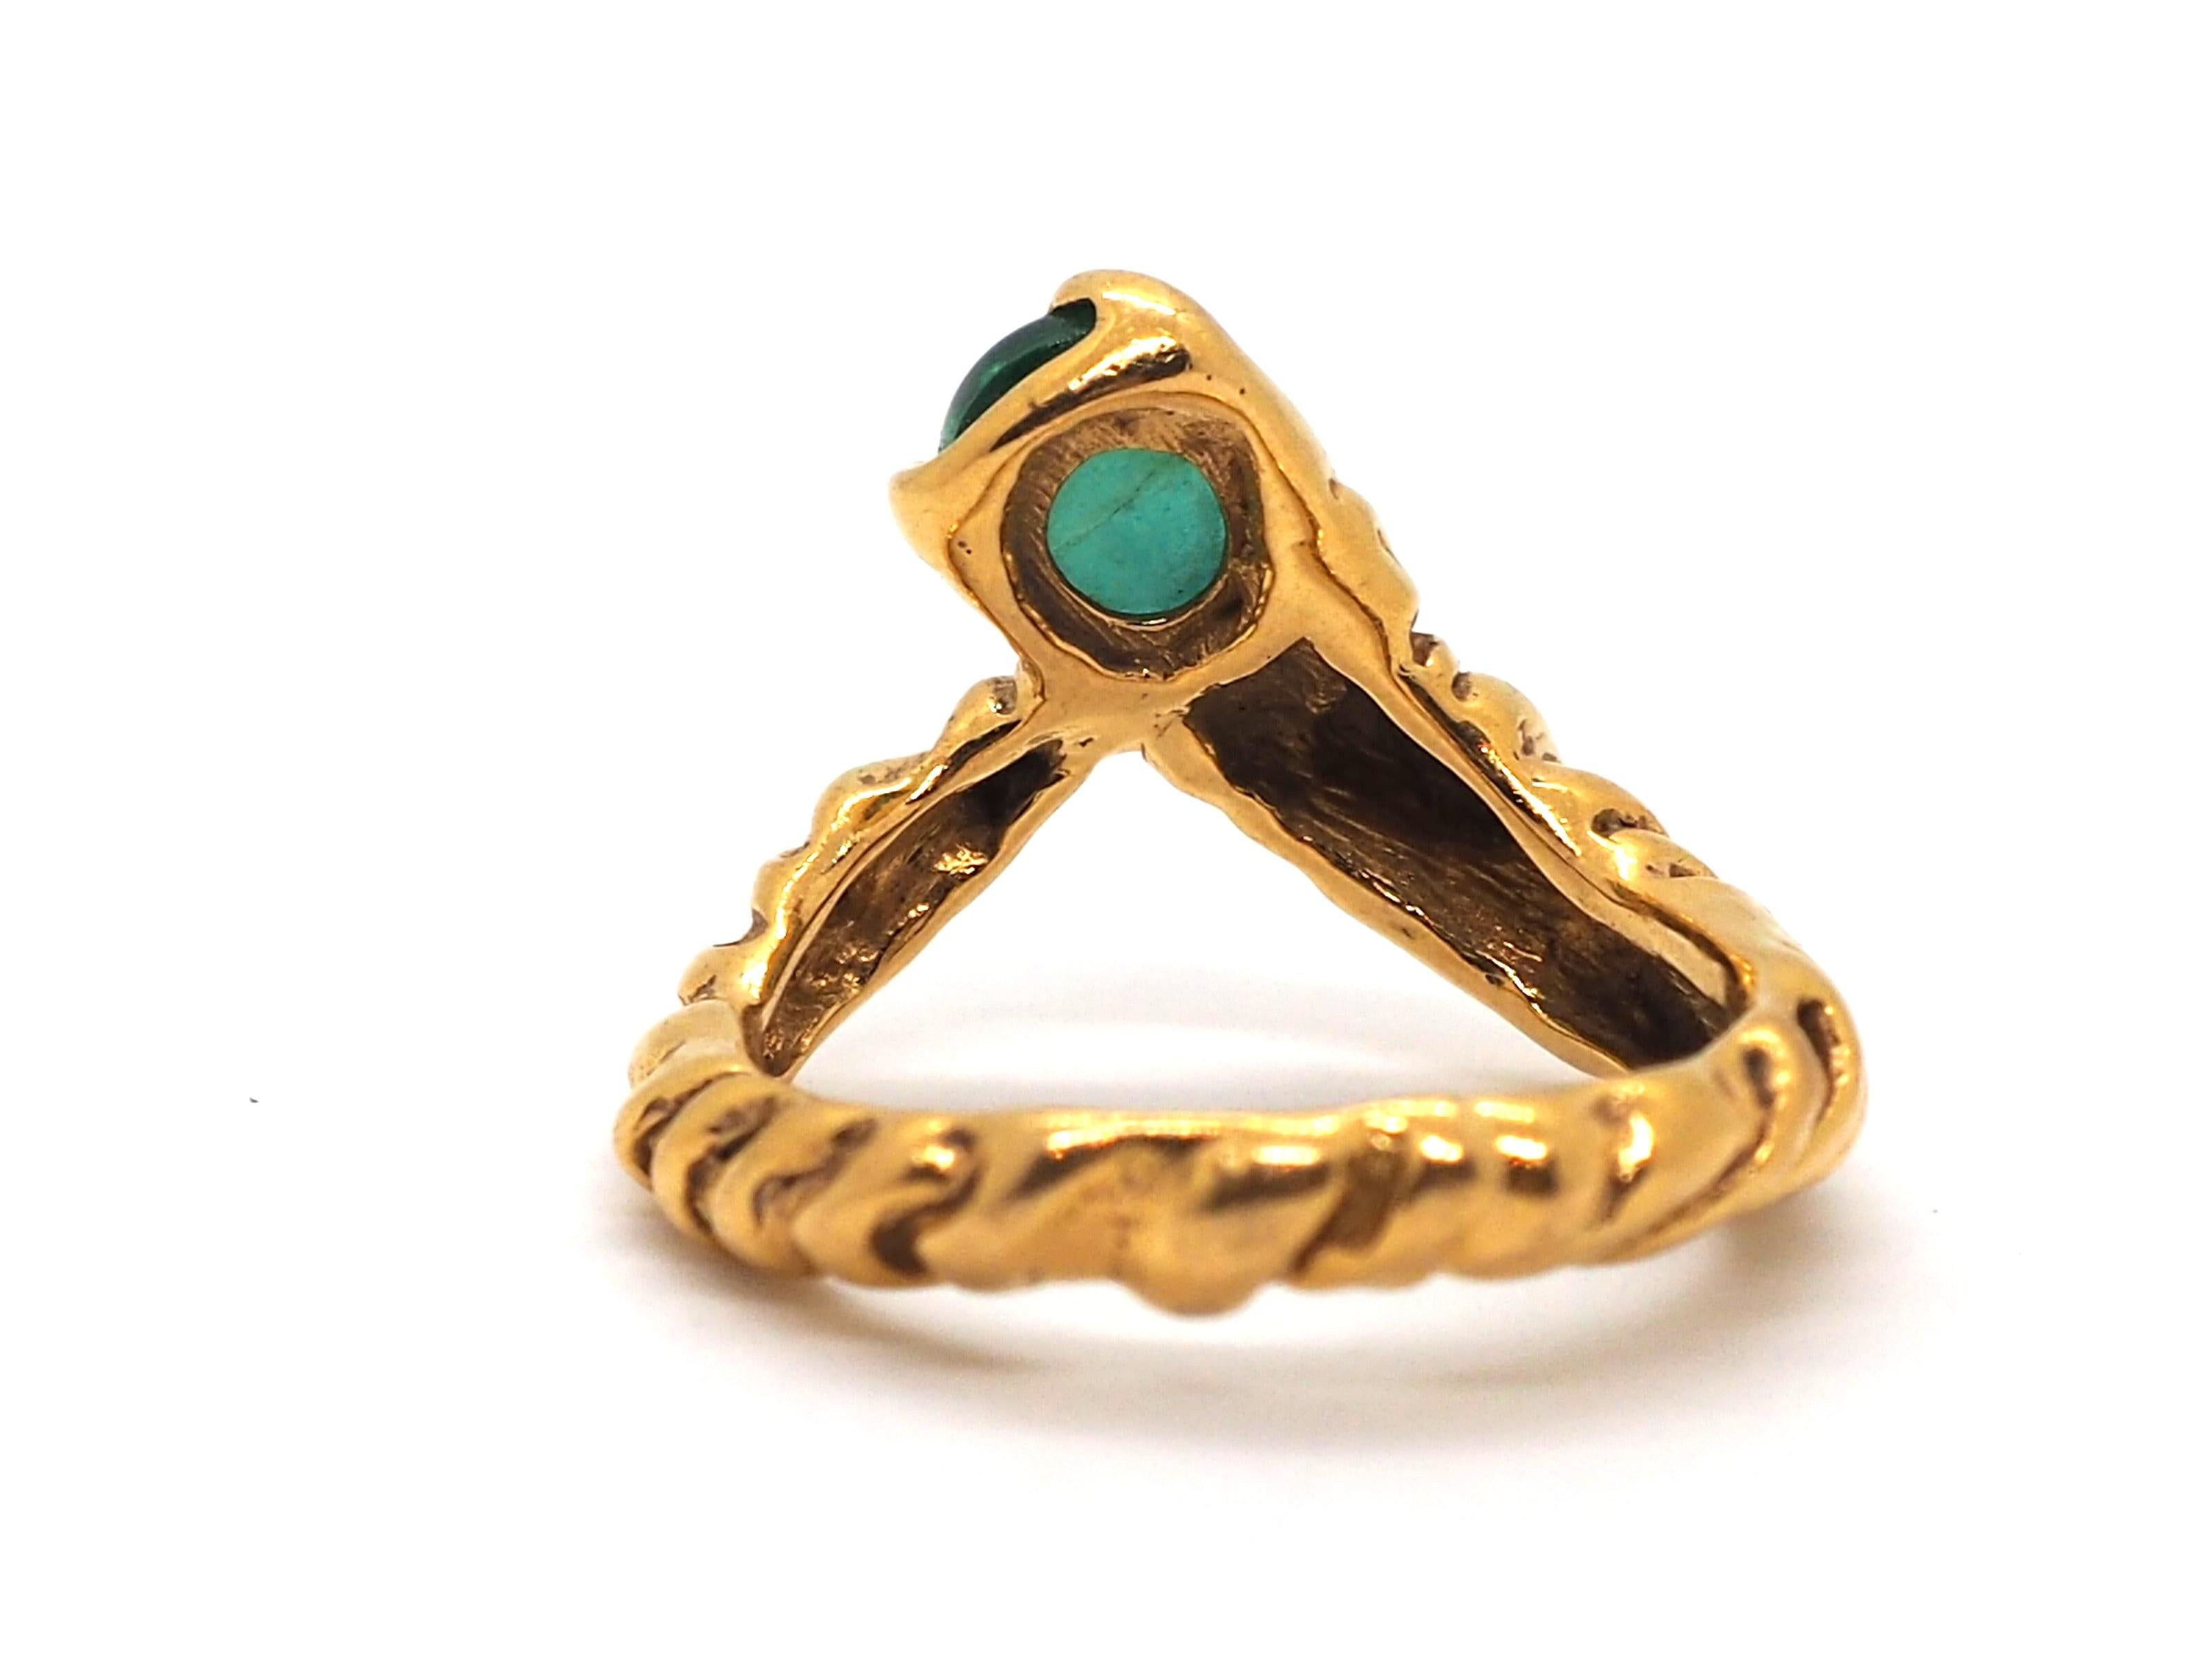 Bellissimo anello di Gilbert Albert, con il suo caratteristico stile ispirato alla natura, realizzato in oro giallo 18 carati e decorato con uno smeraldo ovale di 7,64 mm x 6,10 mm. 

Questo anello donerà eleganza e raffinatezza a qualsiasi stile.